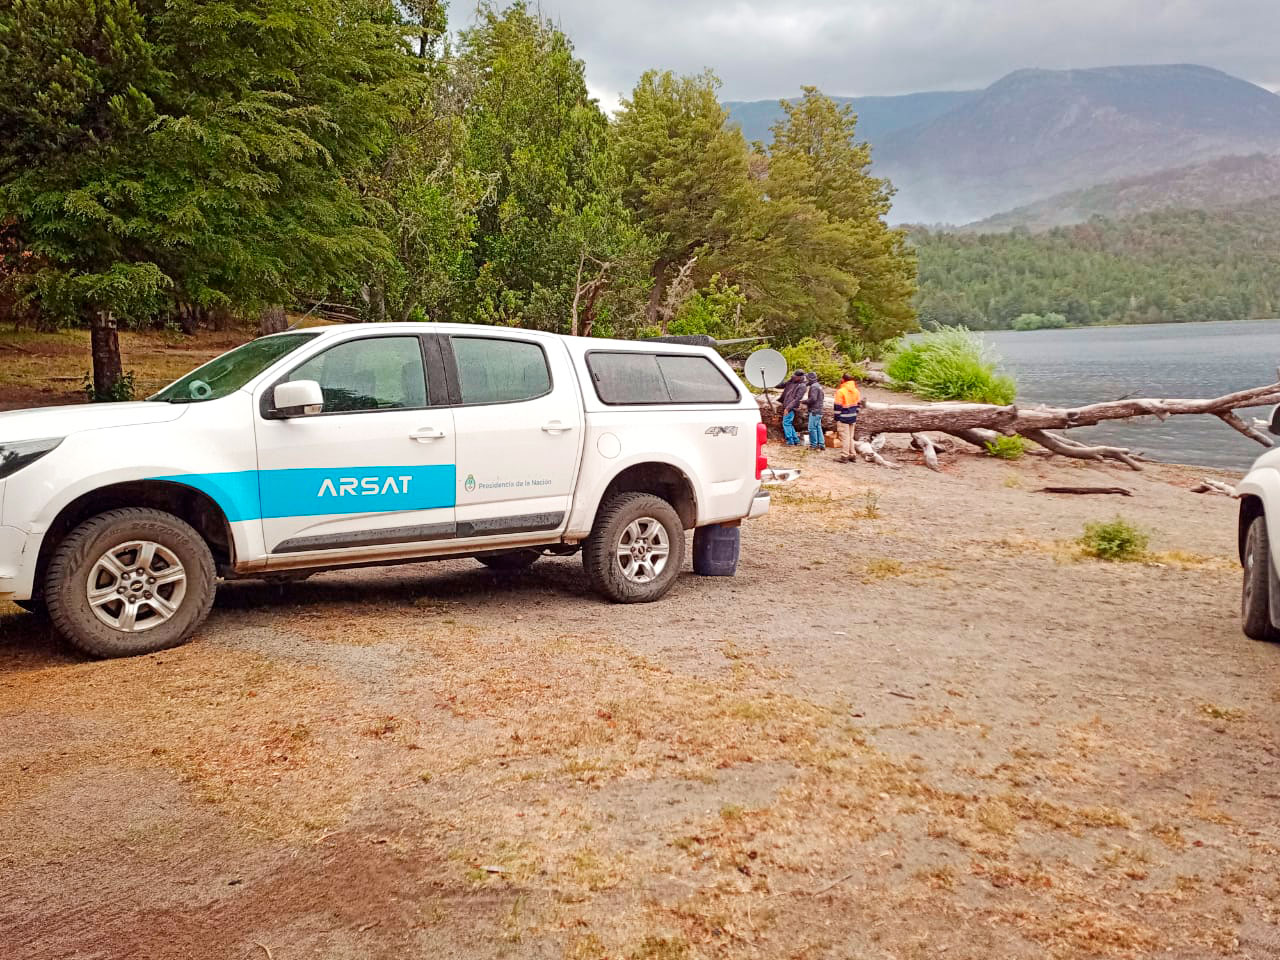 Arsat asegura conectividad a brigadas que combaten incendios en la Patagonia // DpL News